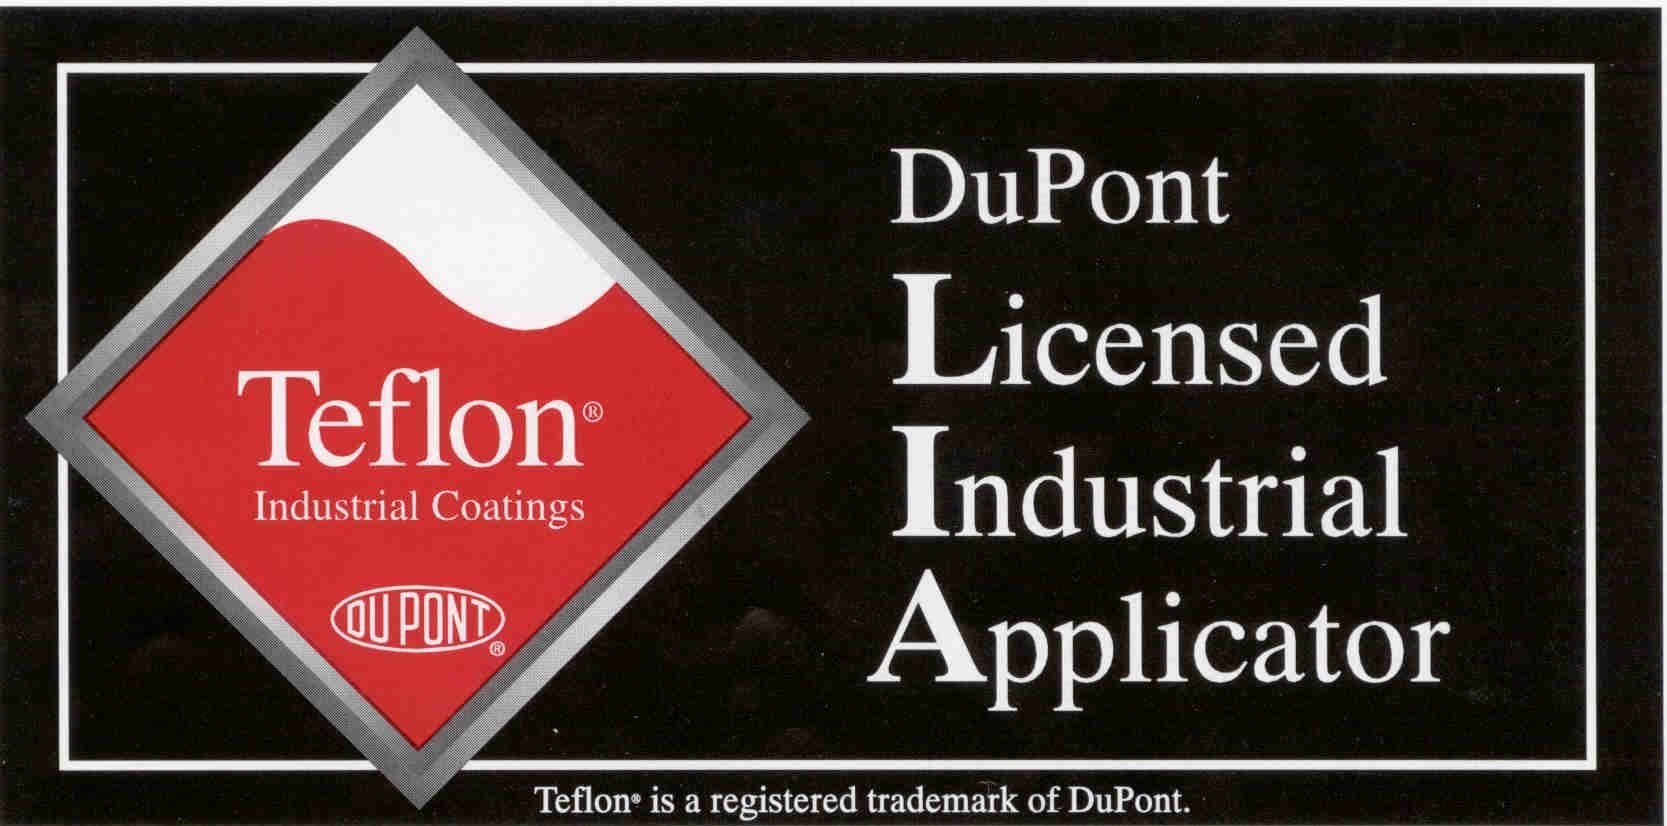 DuPont Licensed Industrial Applicator logo